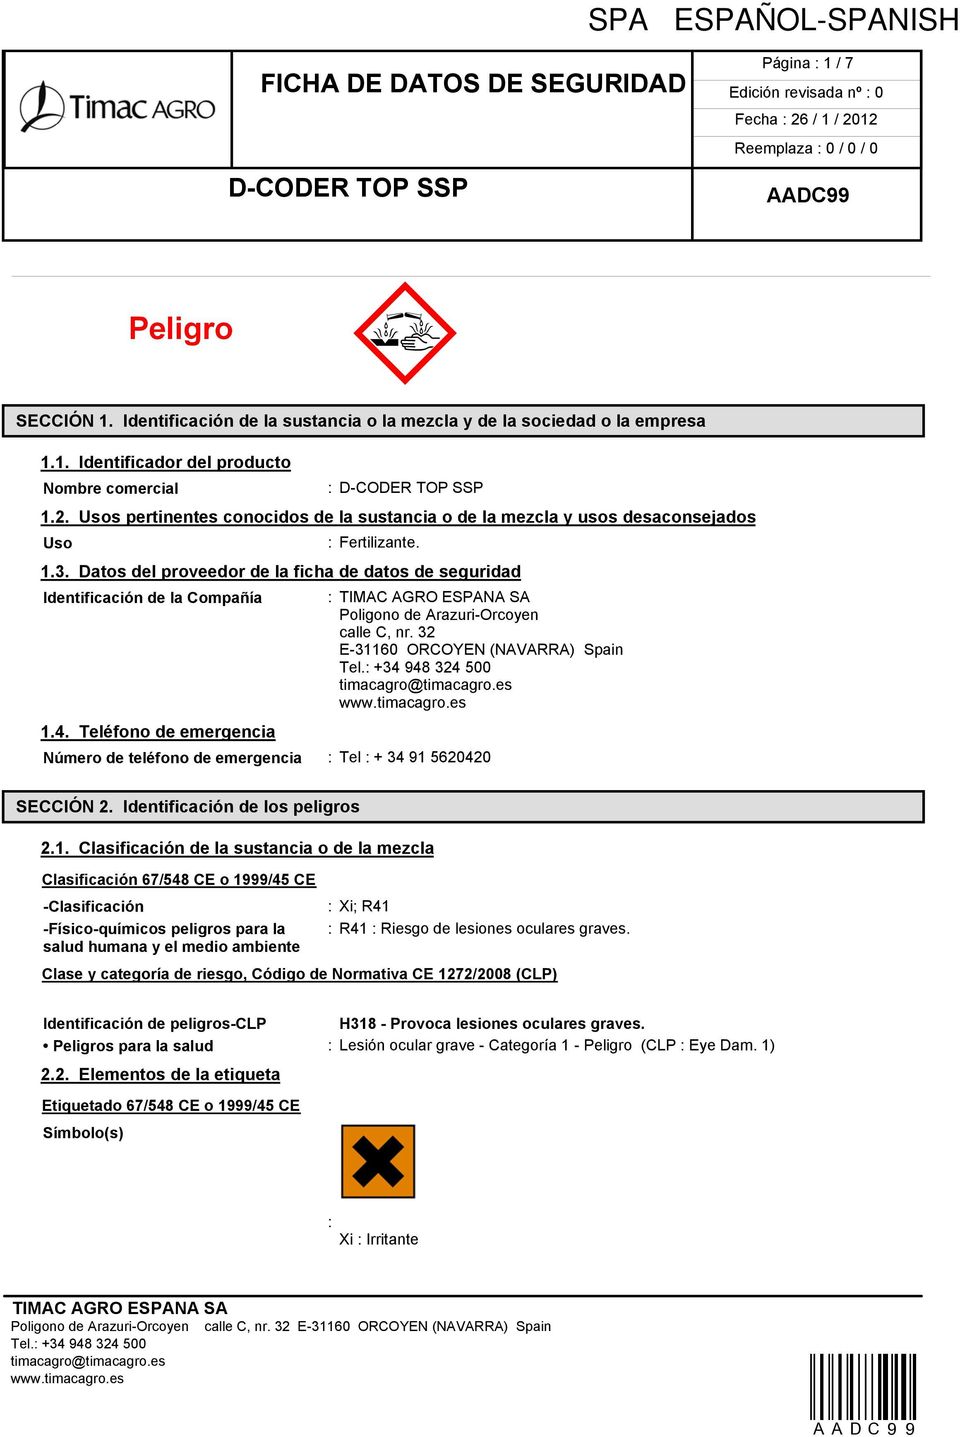 Datos del proveedor de la ficha de datos de seguridad Identificación de la Compañía : Poligono de Arazuri-Orcoyen calle C, nr. 32 E-31160 ORCOYEN (NAVARRA) Spain 1.4.